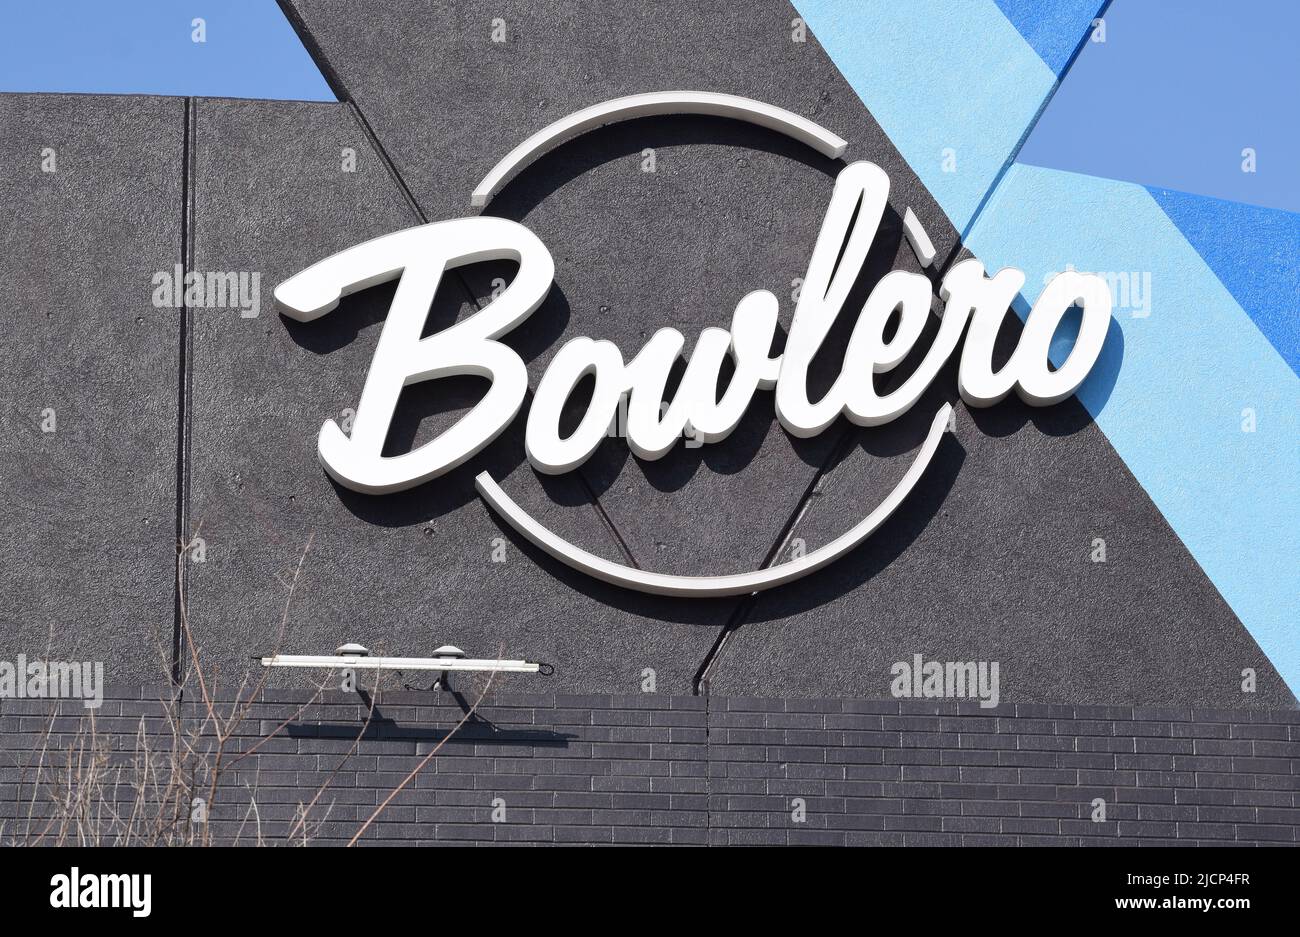 Nahaufnahme eines Bowlero-Bowlingbahn-Schildes Stockfoto